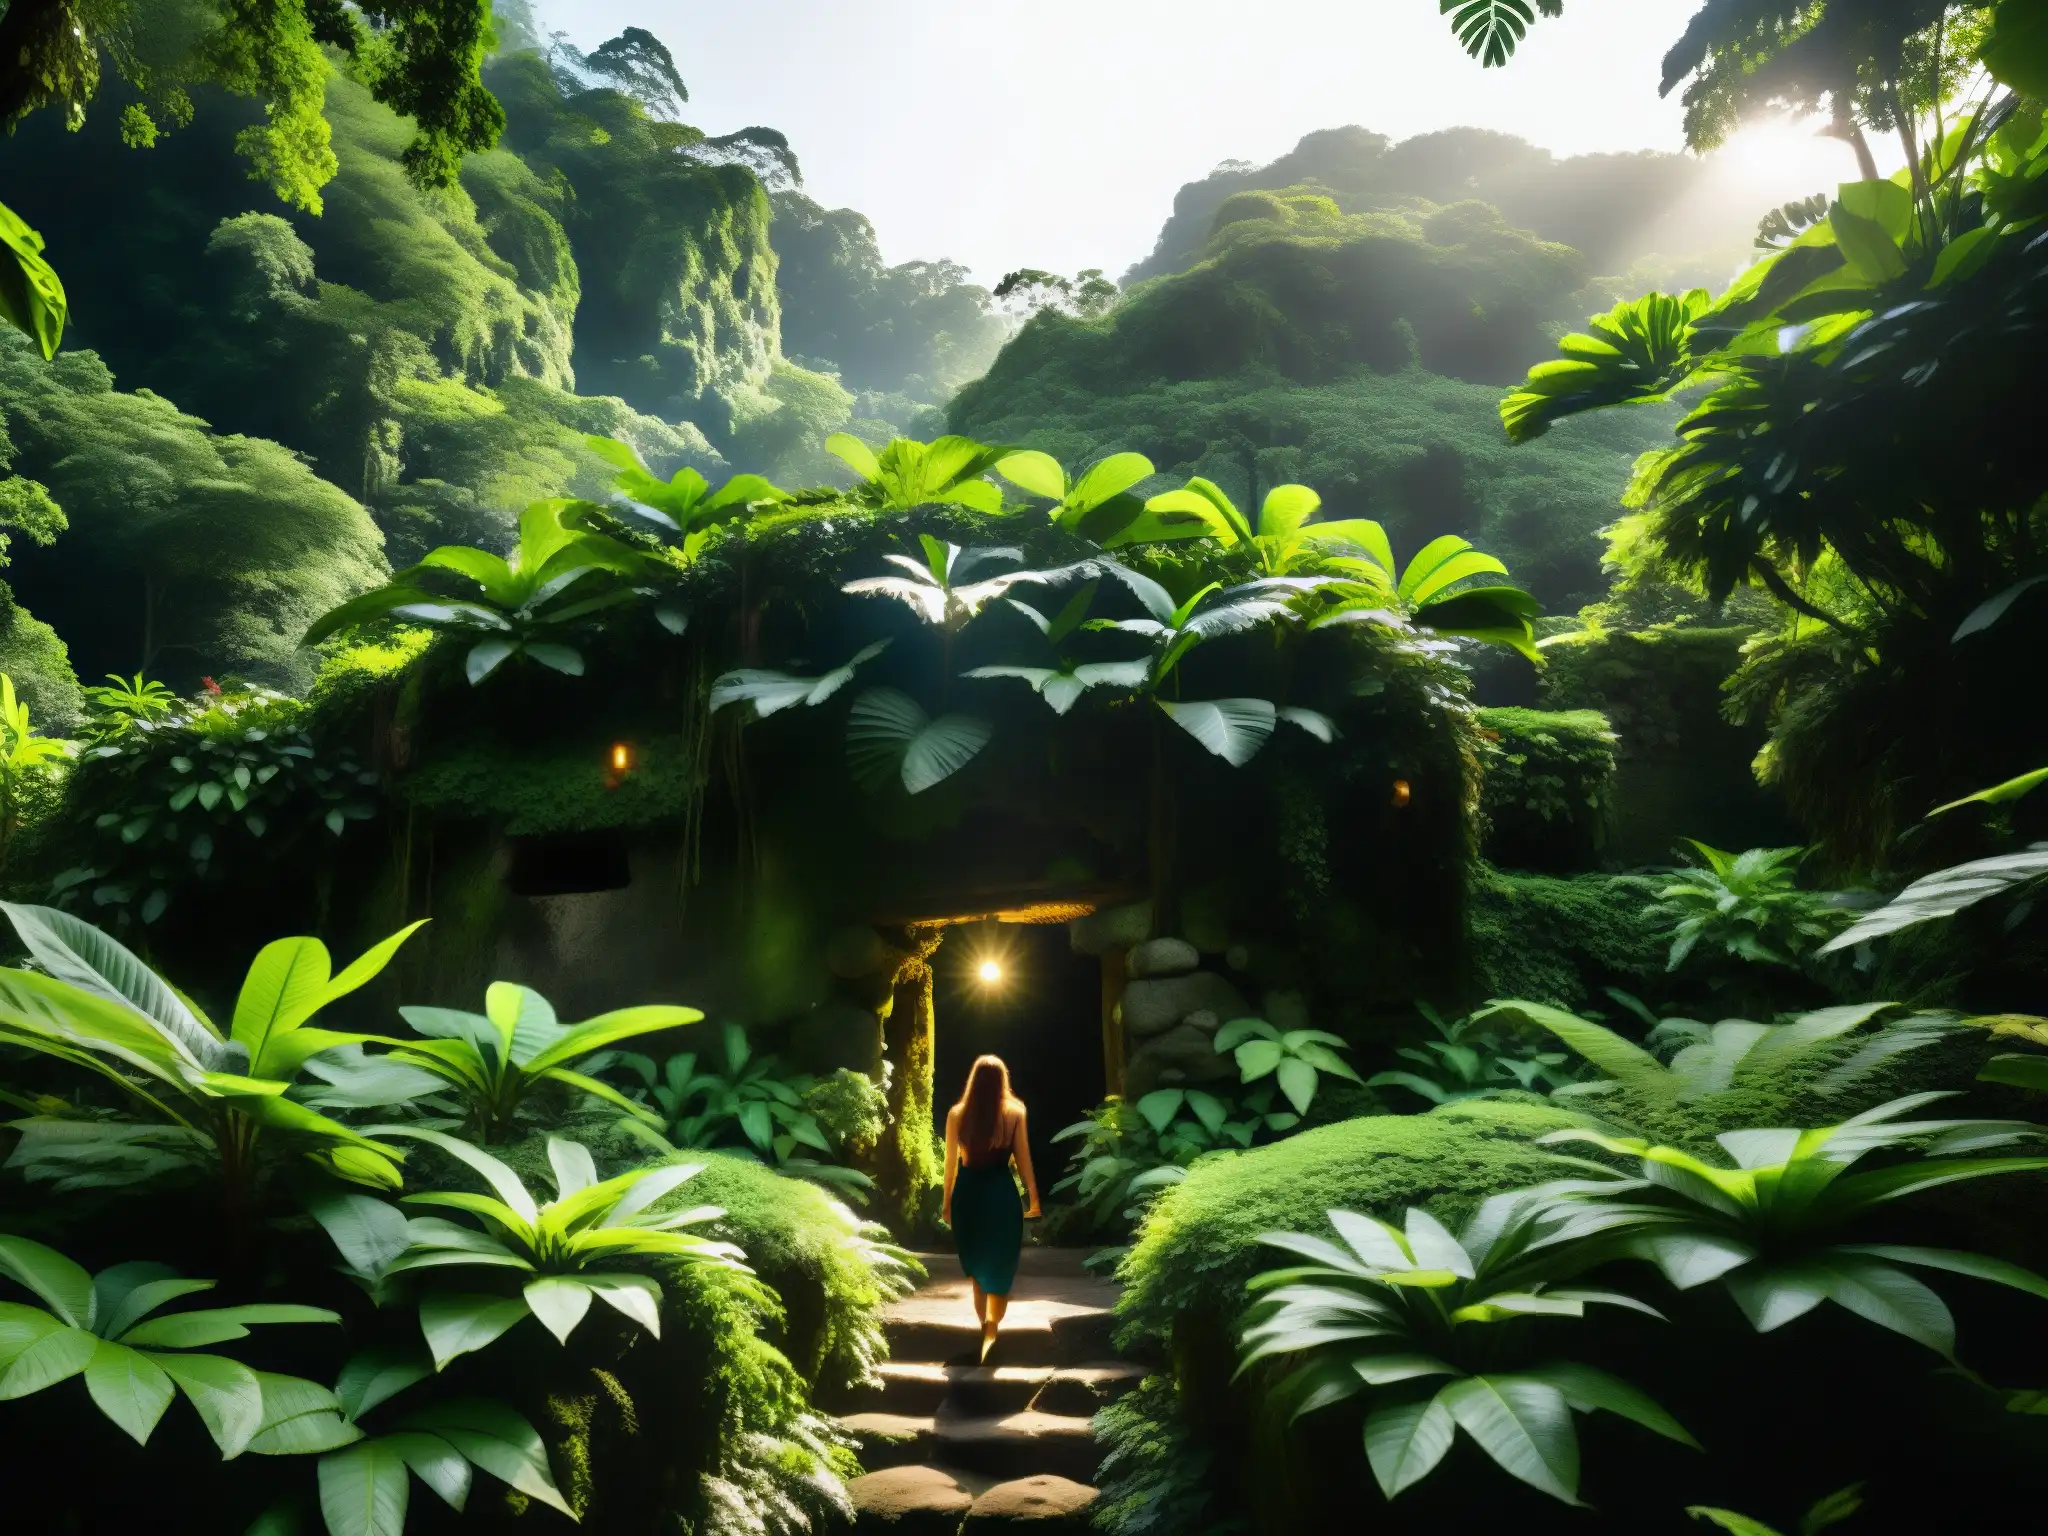 Una escena mística en la selva de Costa Rica con La Tulevieja, figura legendario de Costa Rica, entre ruinas cubiertas de musgo